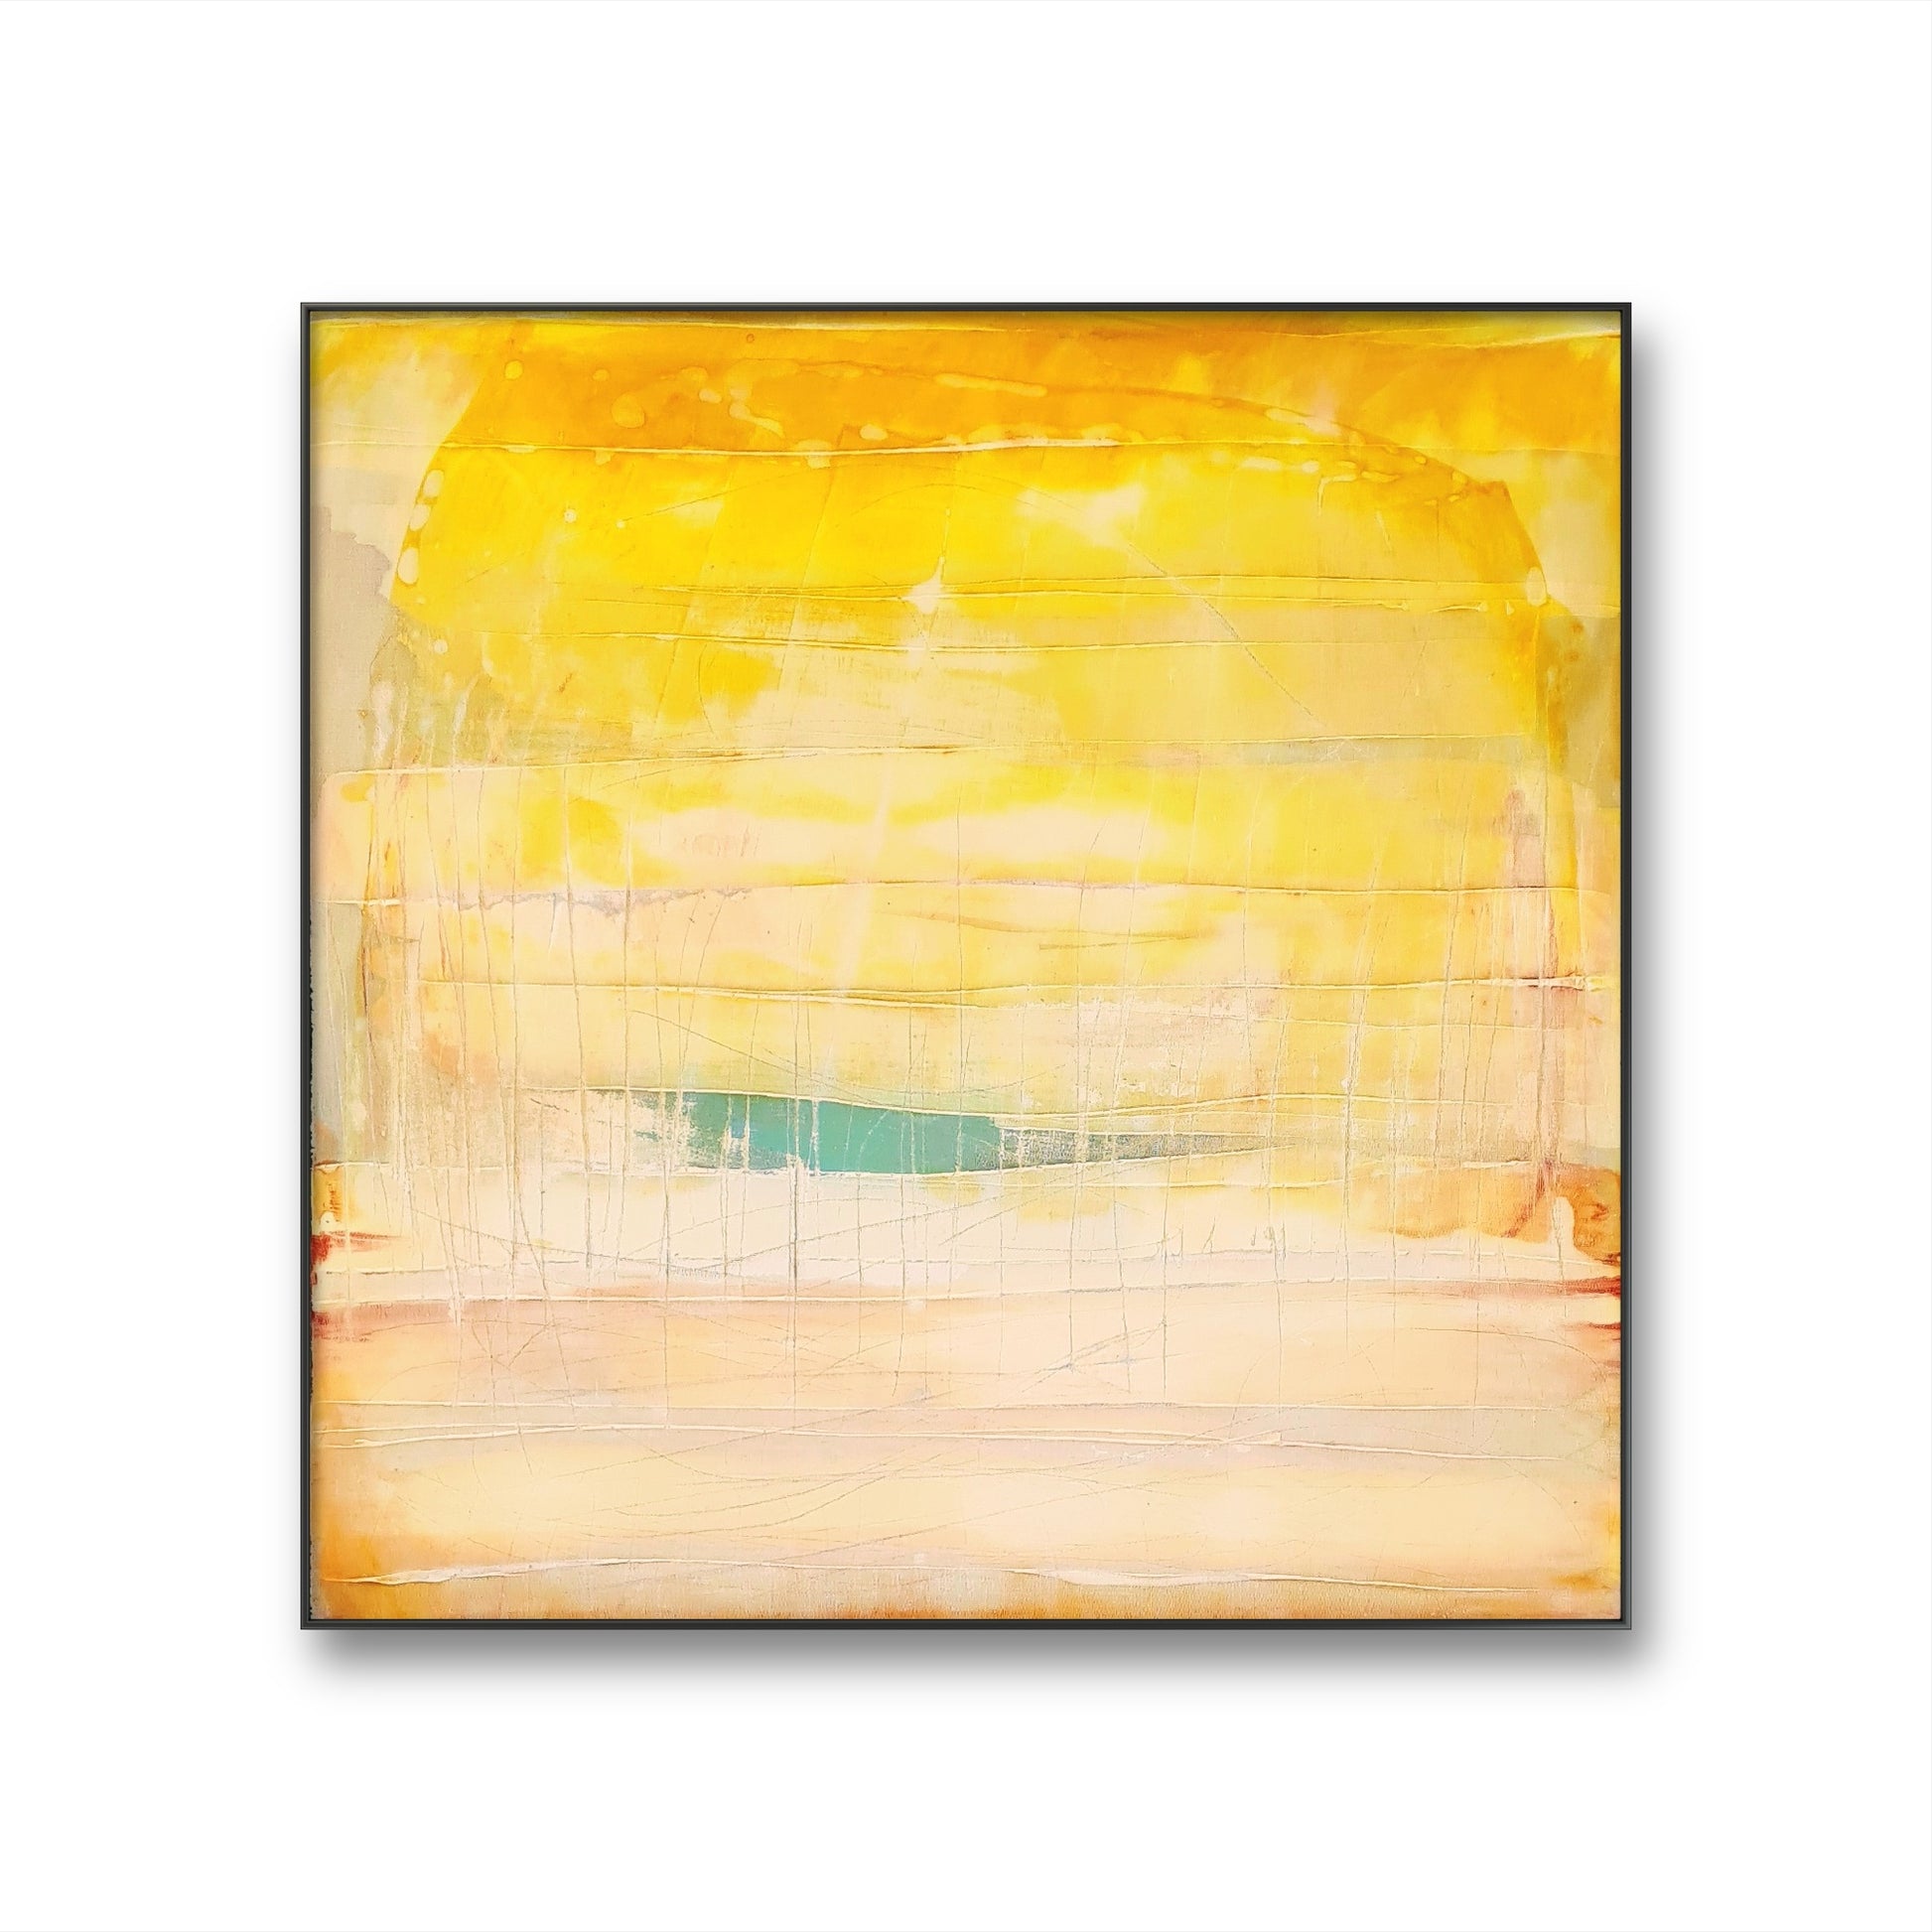 Auftragskunst, abstrakte Bilder, Die Welt des Küstenzaubers - 80 x 80 cm - Bild 1 von 4 - Auftrag,gelbe-bilder-1, abstrakte Bilder kaufen ,